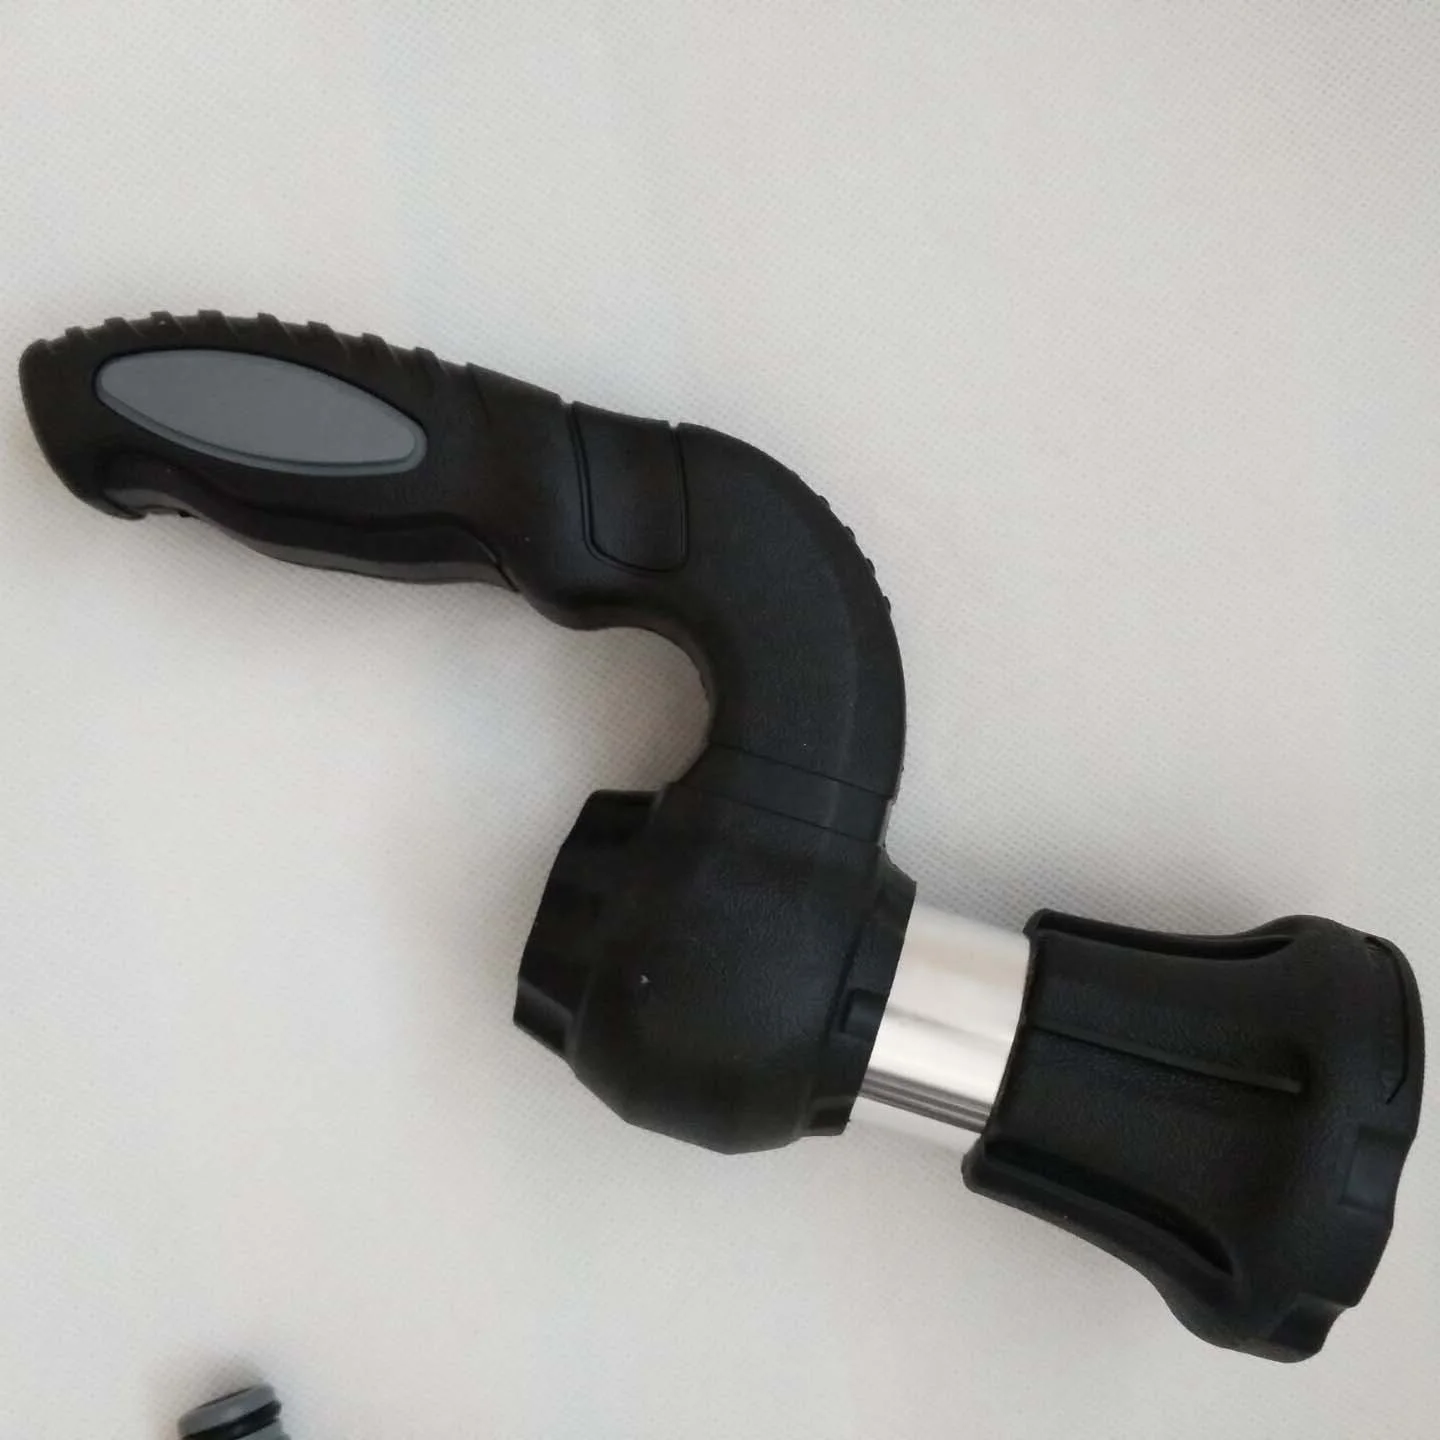 

Pressurized Water Gun Head Handheld Alloy High-pressure Strong Car Wash Garden Water Gun Black Handle